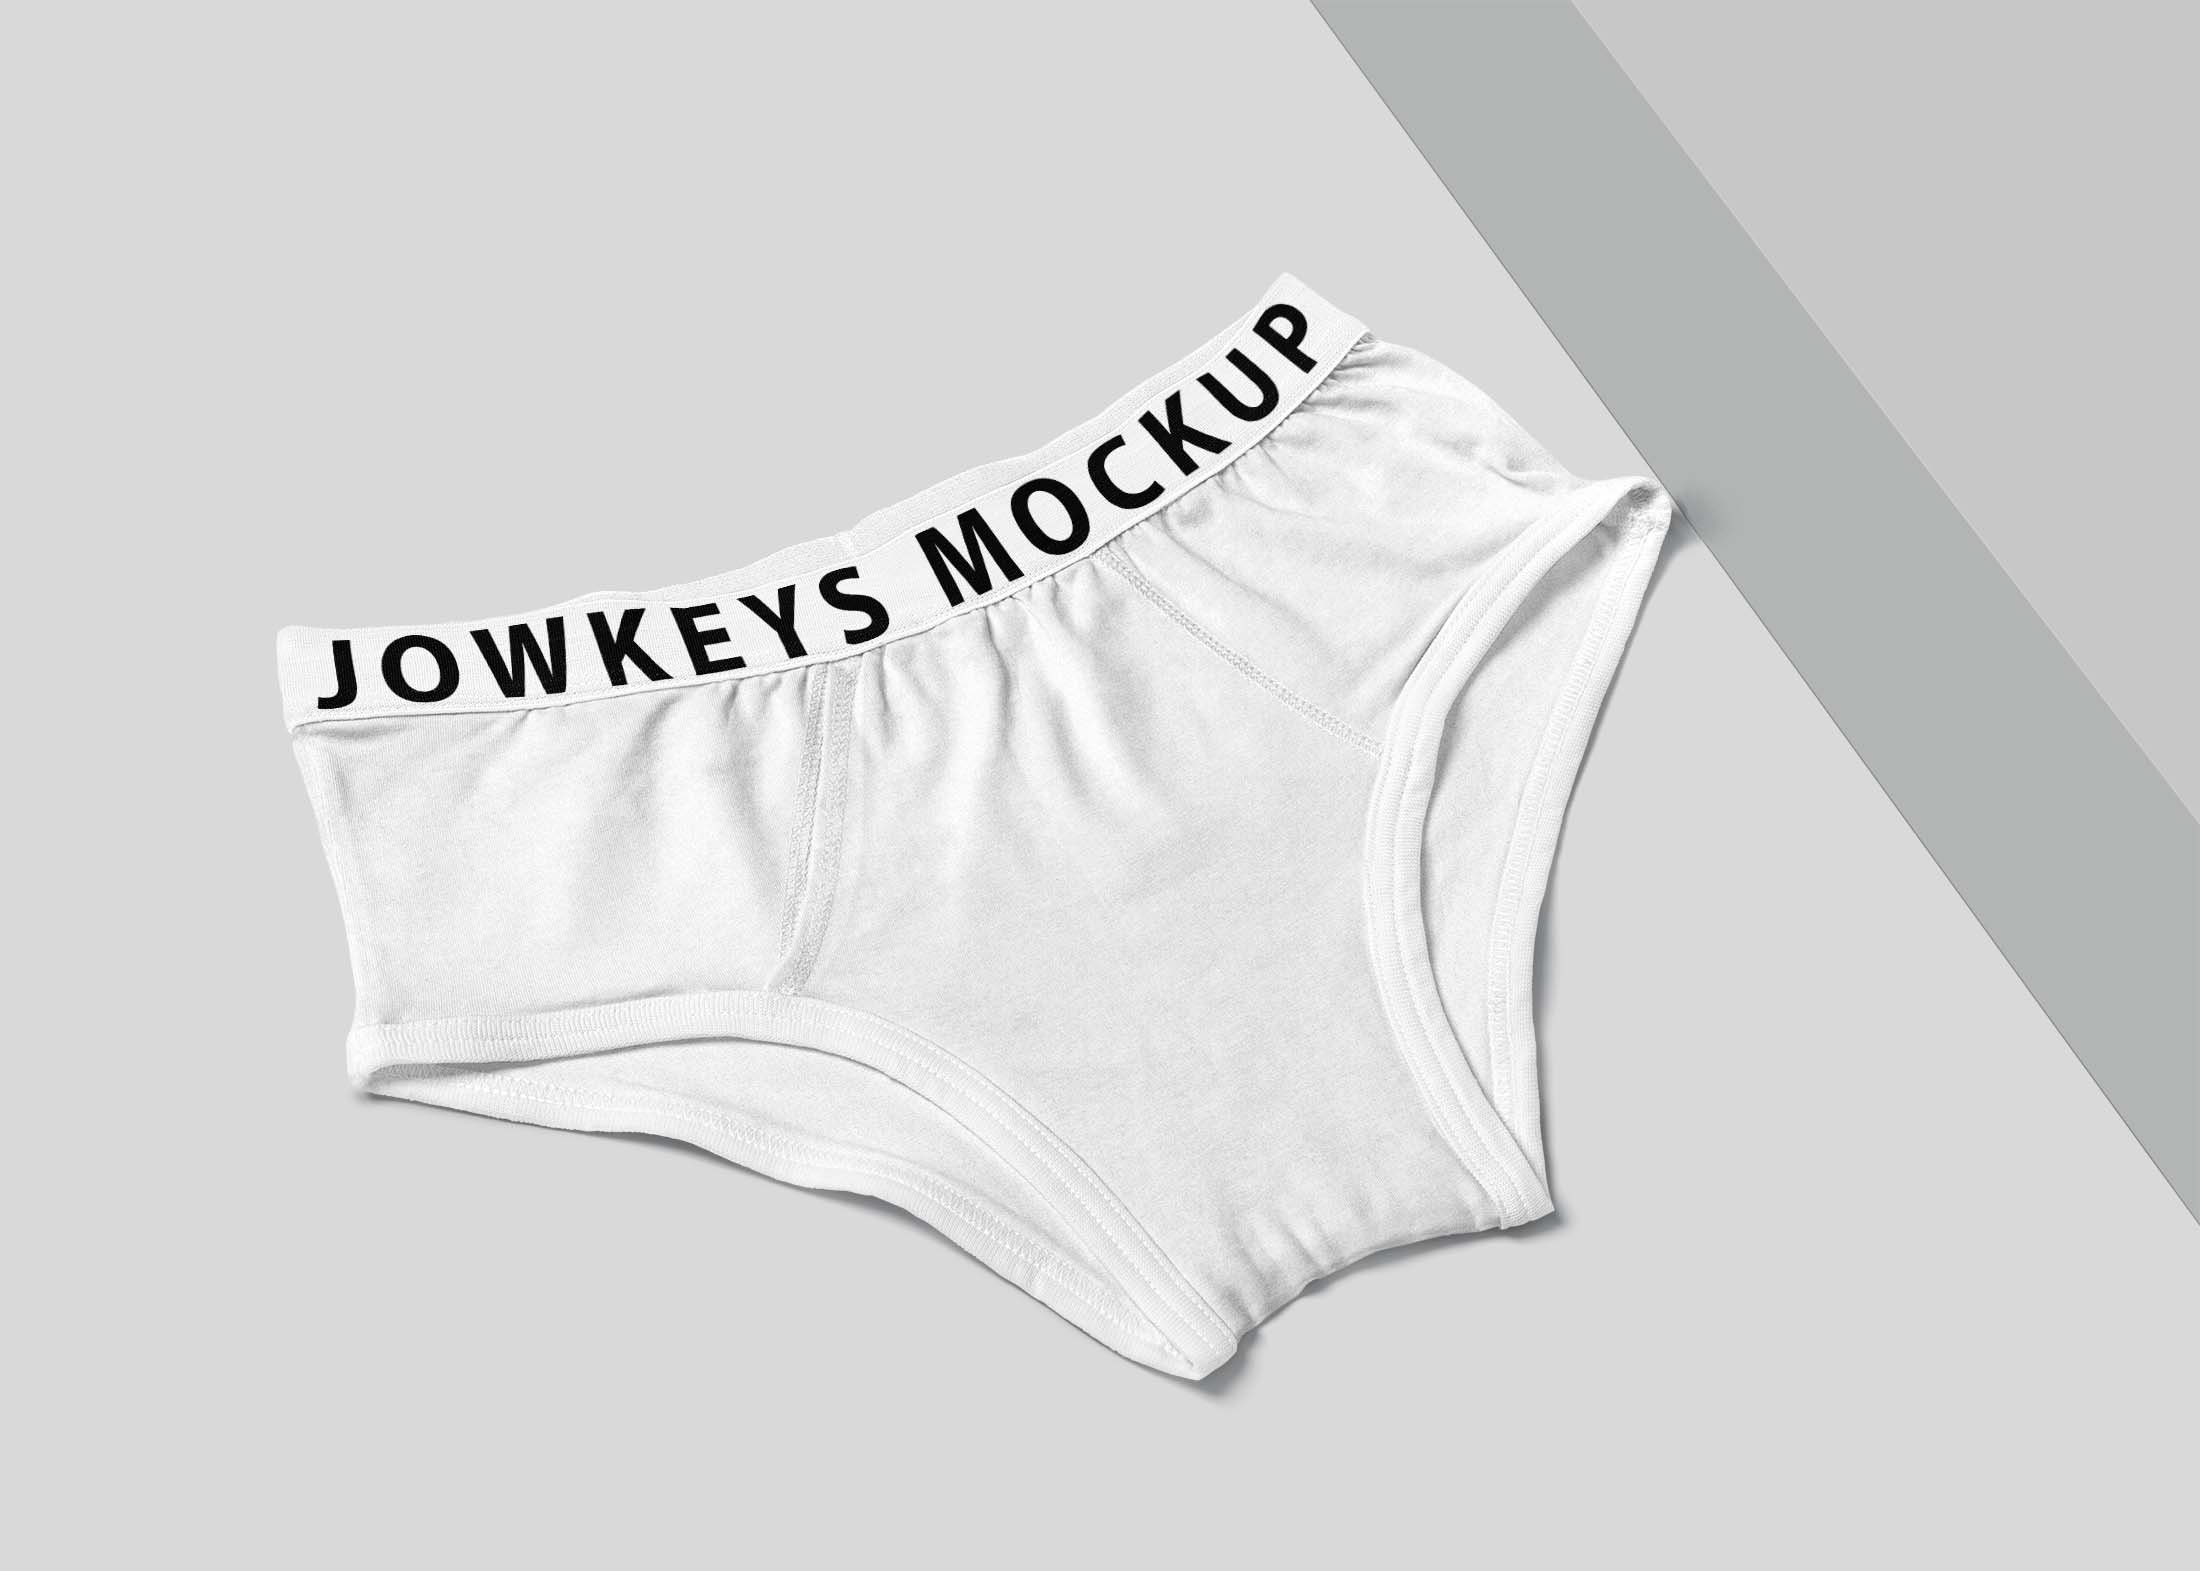 Free Jockey Underwear Mockup